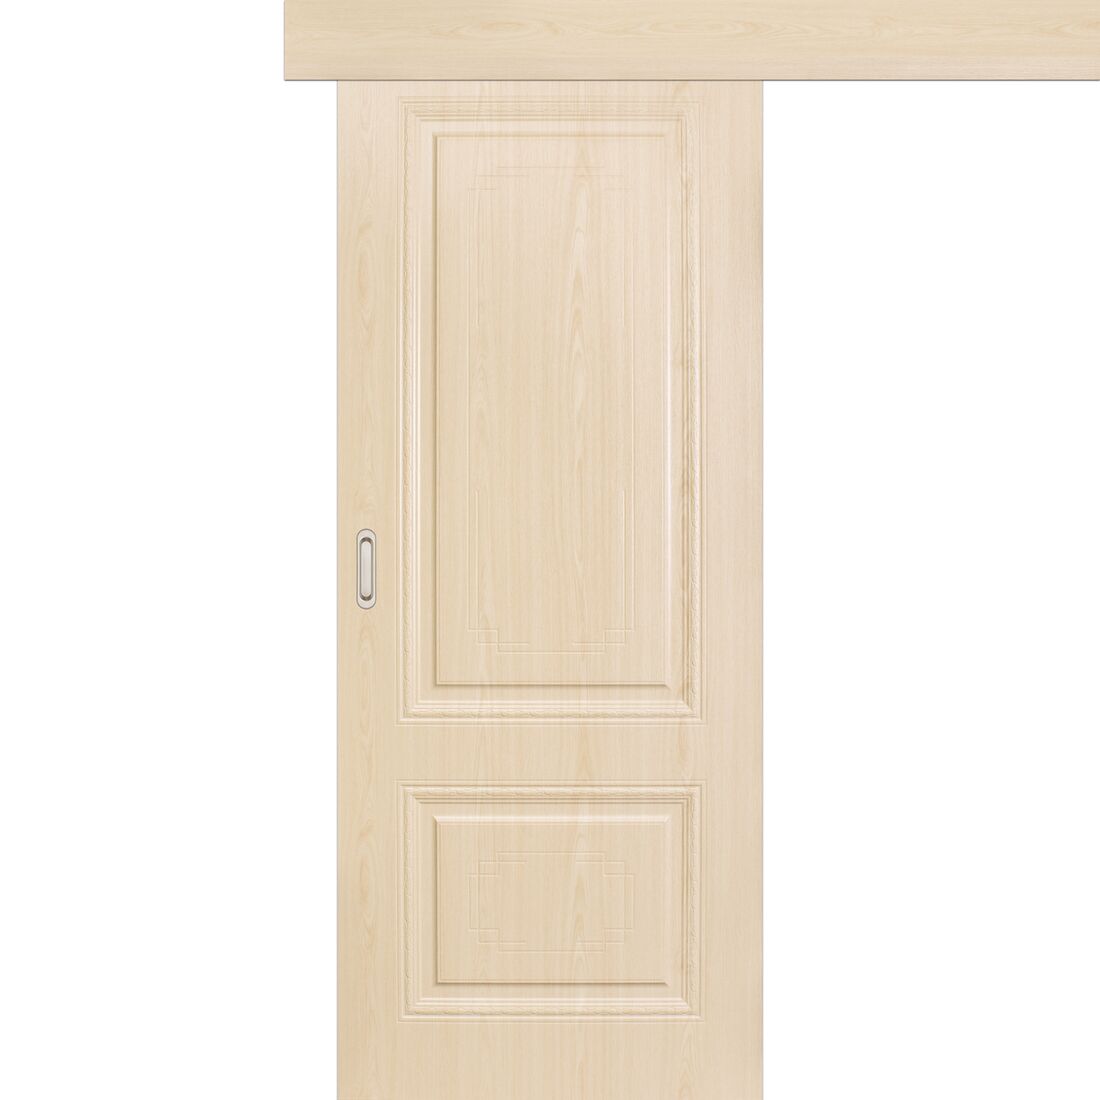 Межкомнатная дверь, Гармония, Бари, Беленый дуб Alpi, Раздвижная, Одностворчатая, 800 х 2000 мм